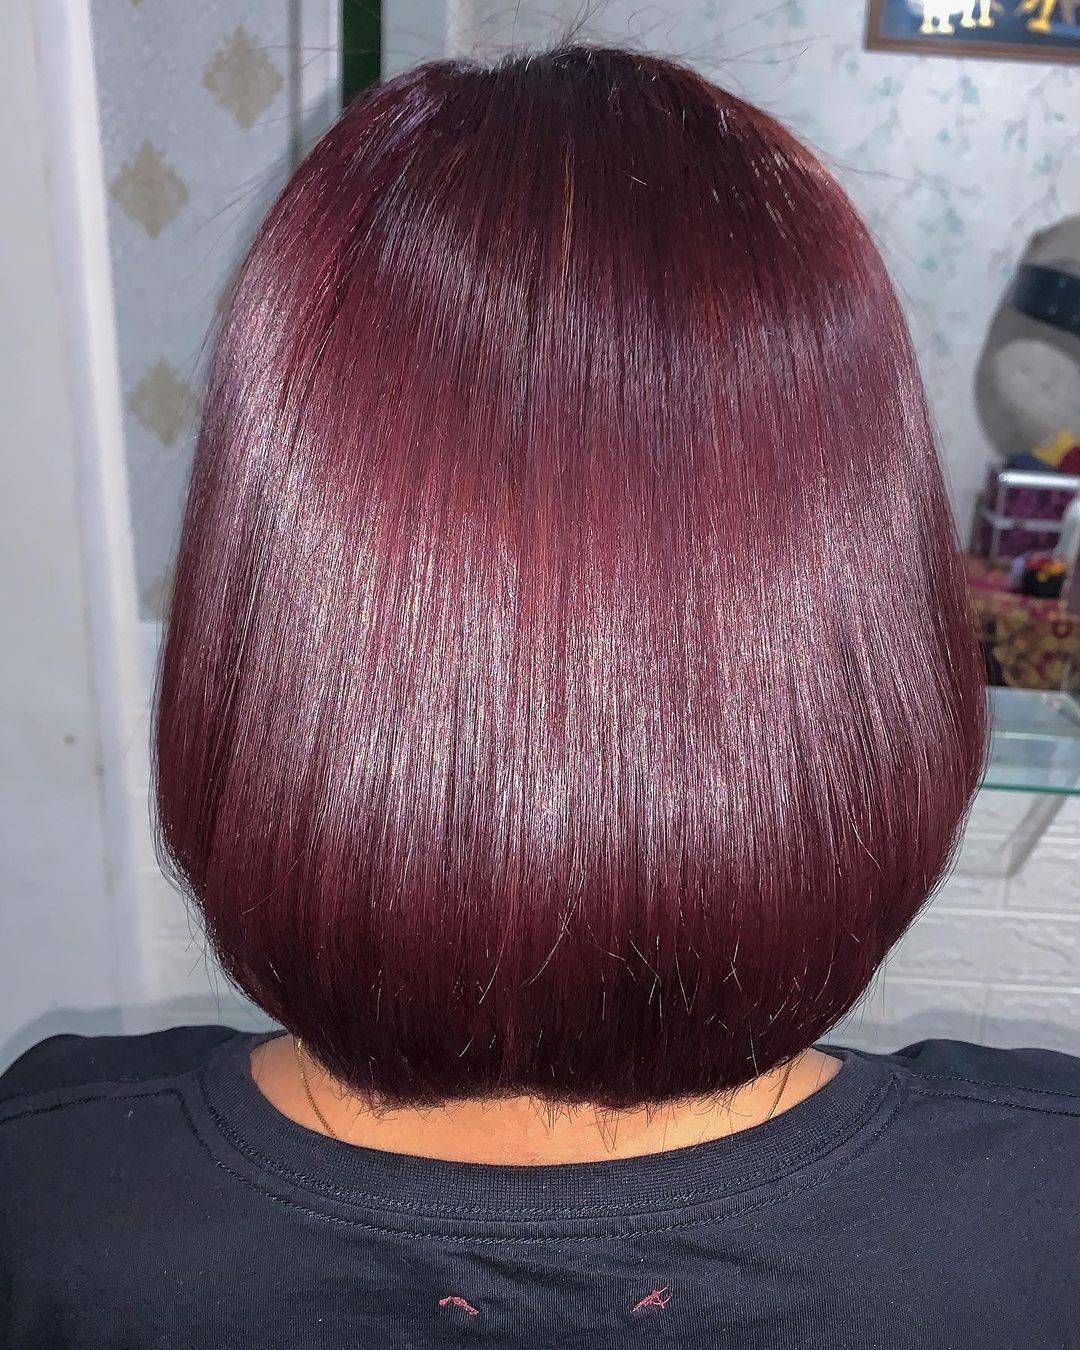 Burgundy hair color 252 burgundy hair color | burgundy hair color for women | burgundy hair color highlights Burgundy Hair Color